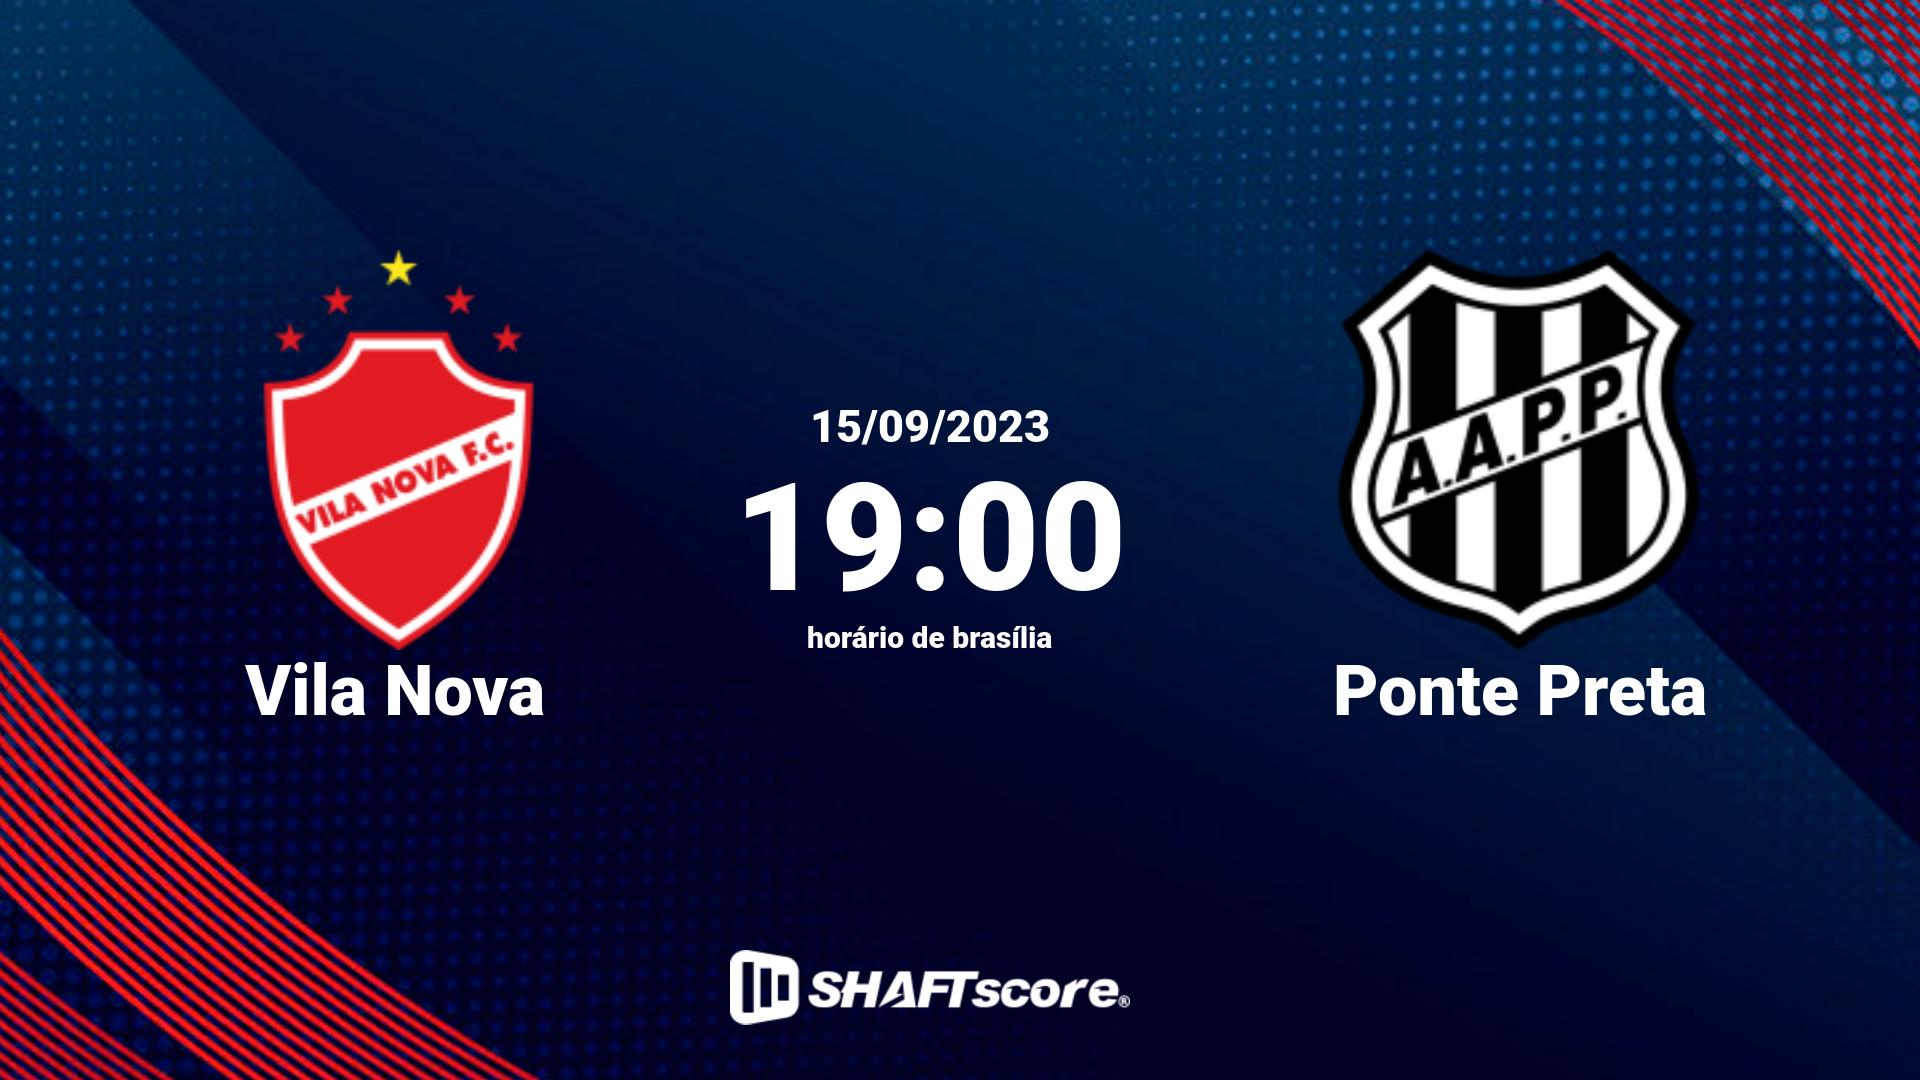 Estatísticas do jogo Vila Nova vs Ponte Preta 15.09 19:00